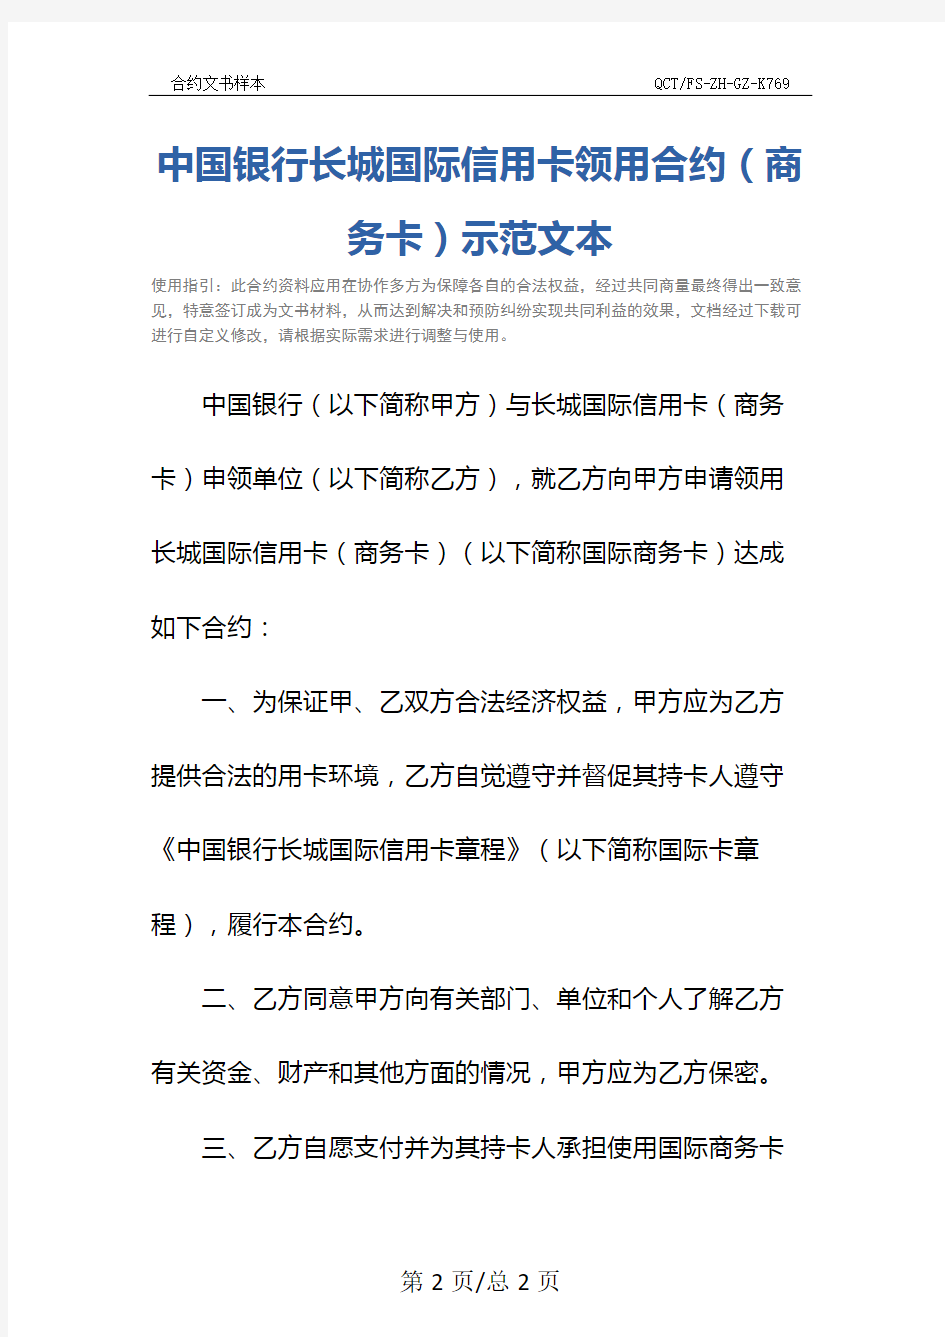 中国银行长城国际信用卡领用合约(商务卡)示范文本